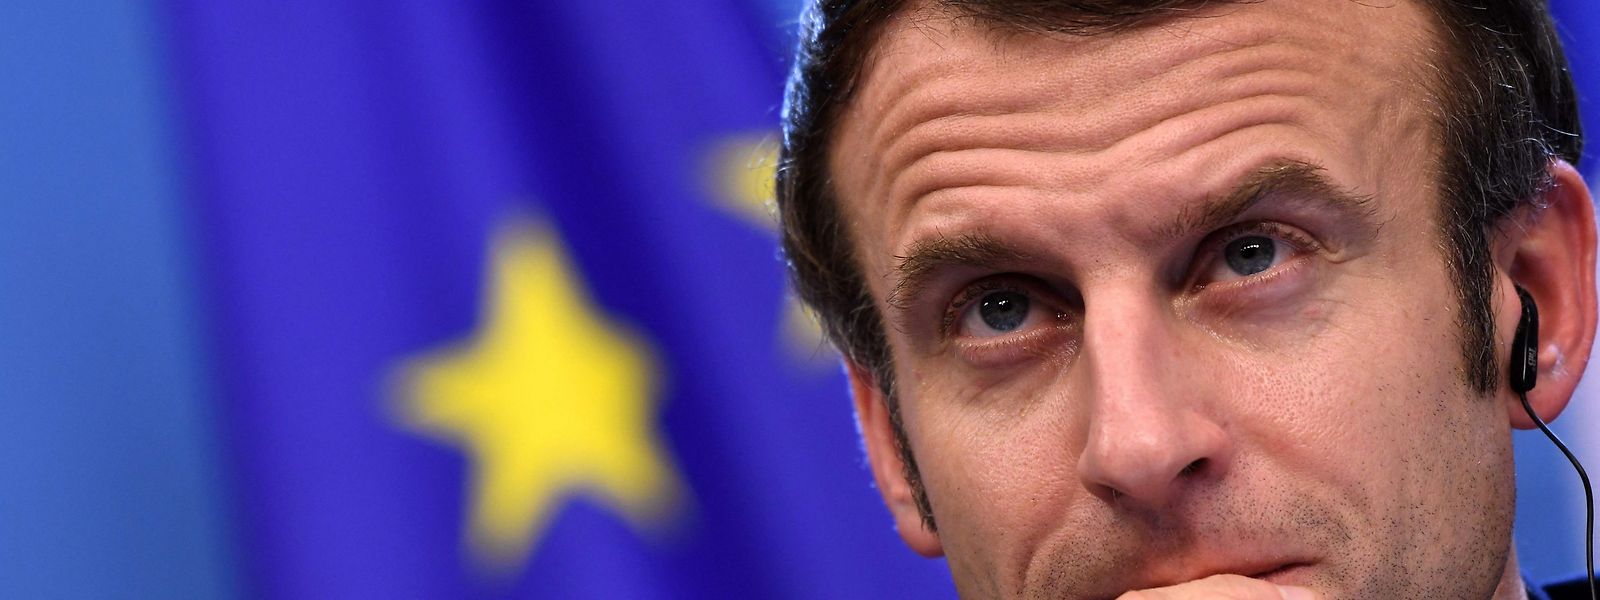 Macron muss gleichzeitig einen Wahlkampf und eine EU-Ratspräsidentschaft leiten ... Kann das gut gehen? 